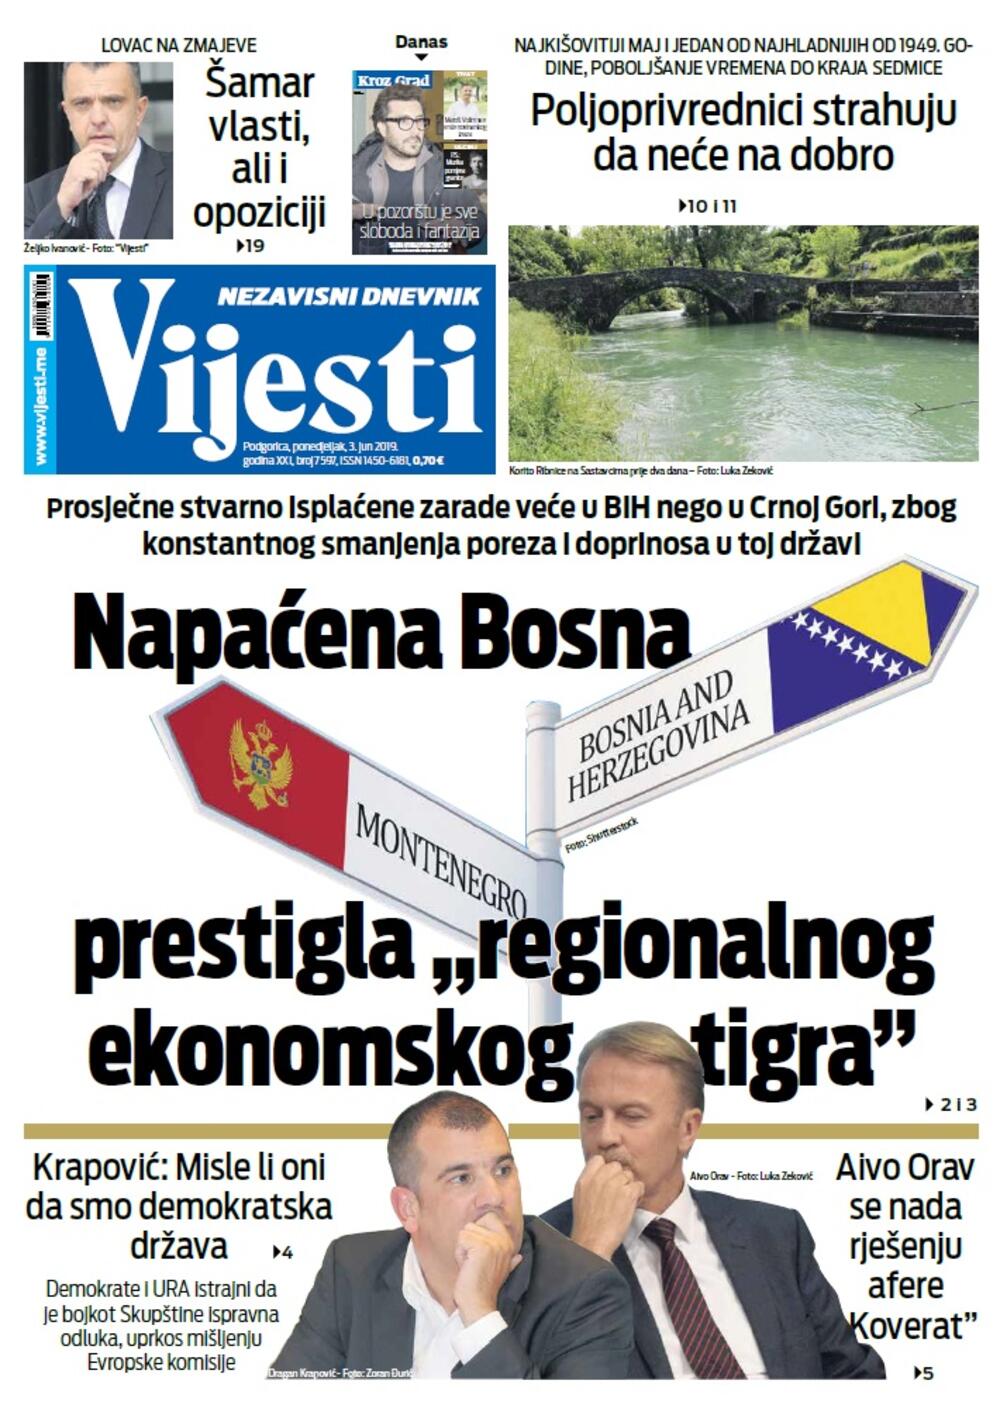 Naslovna strana "Vijesti" za 3. jun, Foto: Vijesti